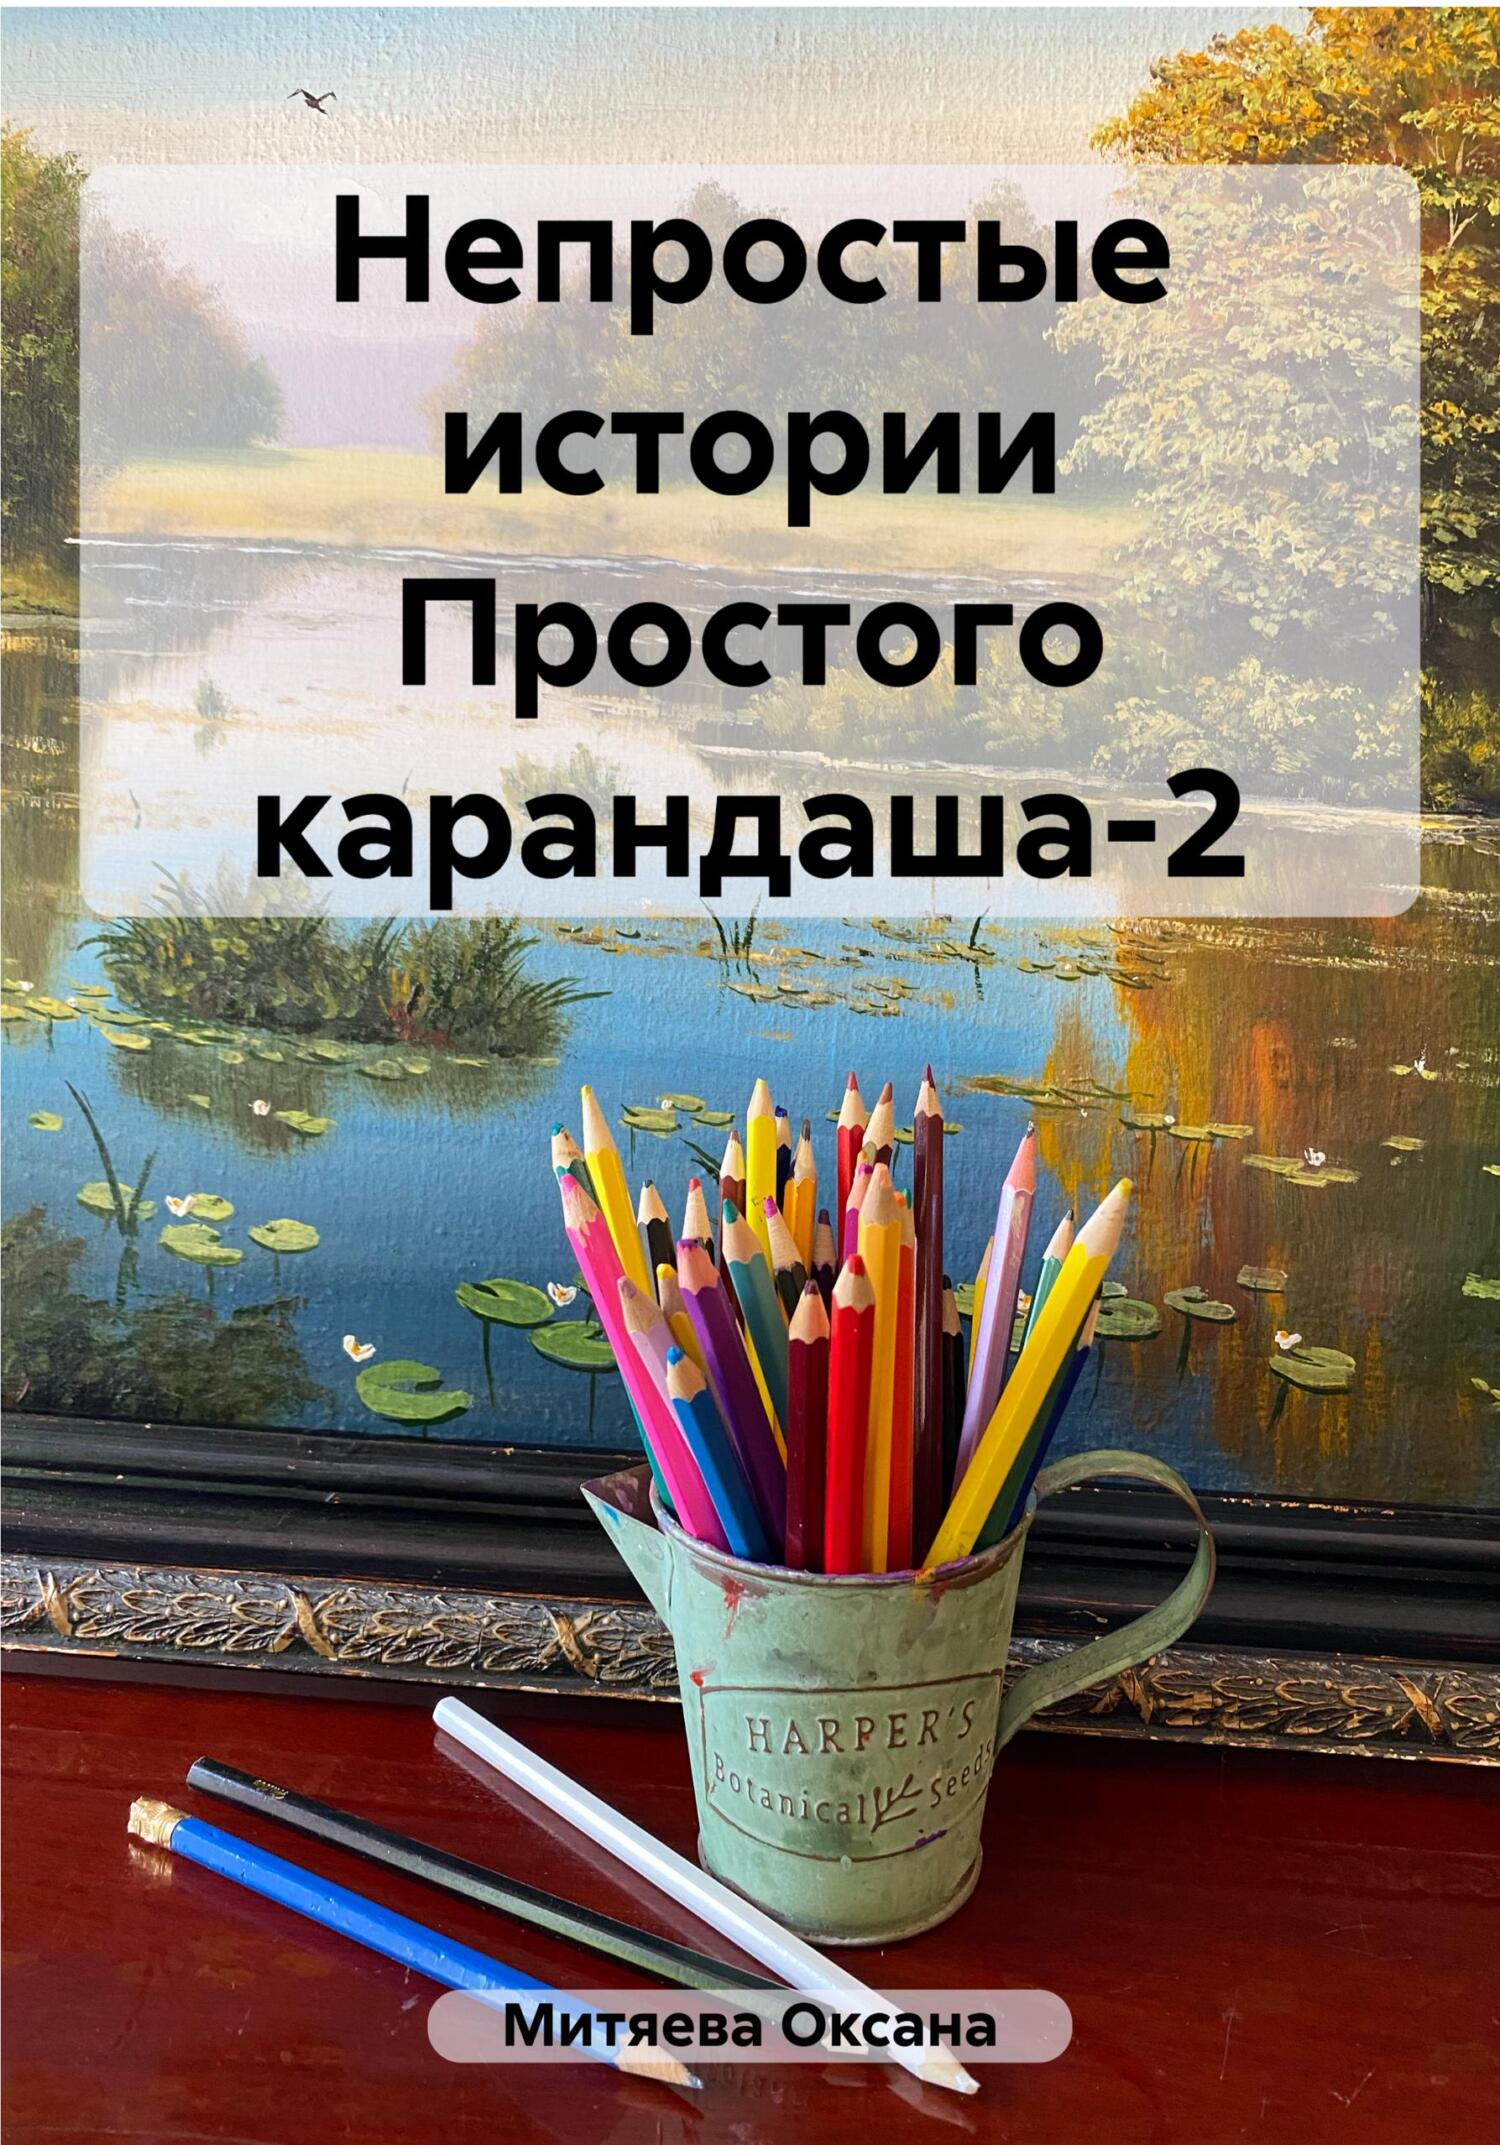 Непростые истории Простого карандаша-2 - Оксана Митяева